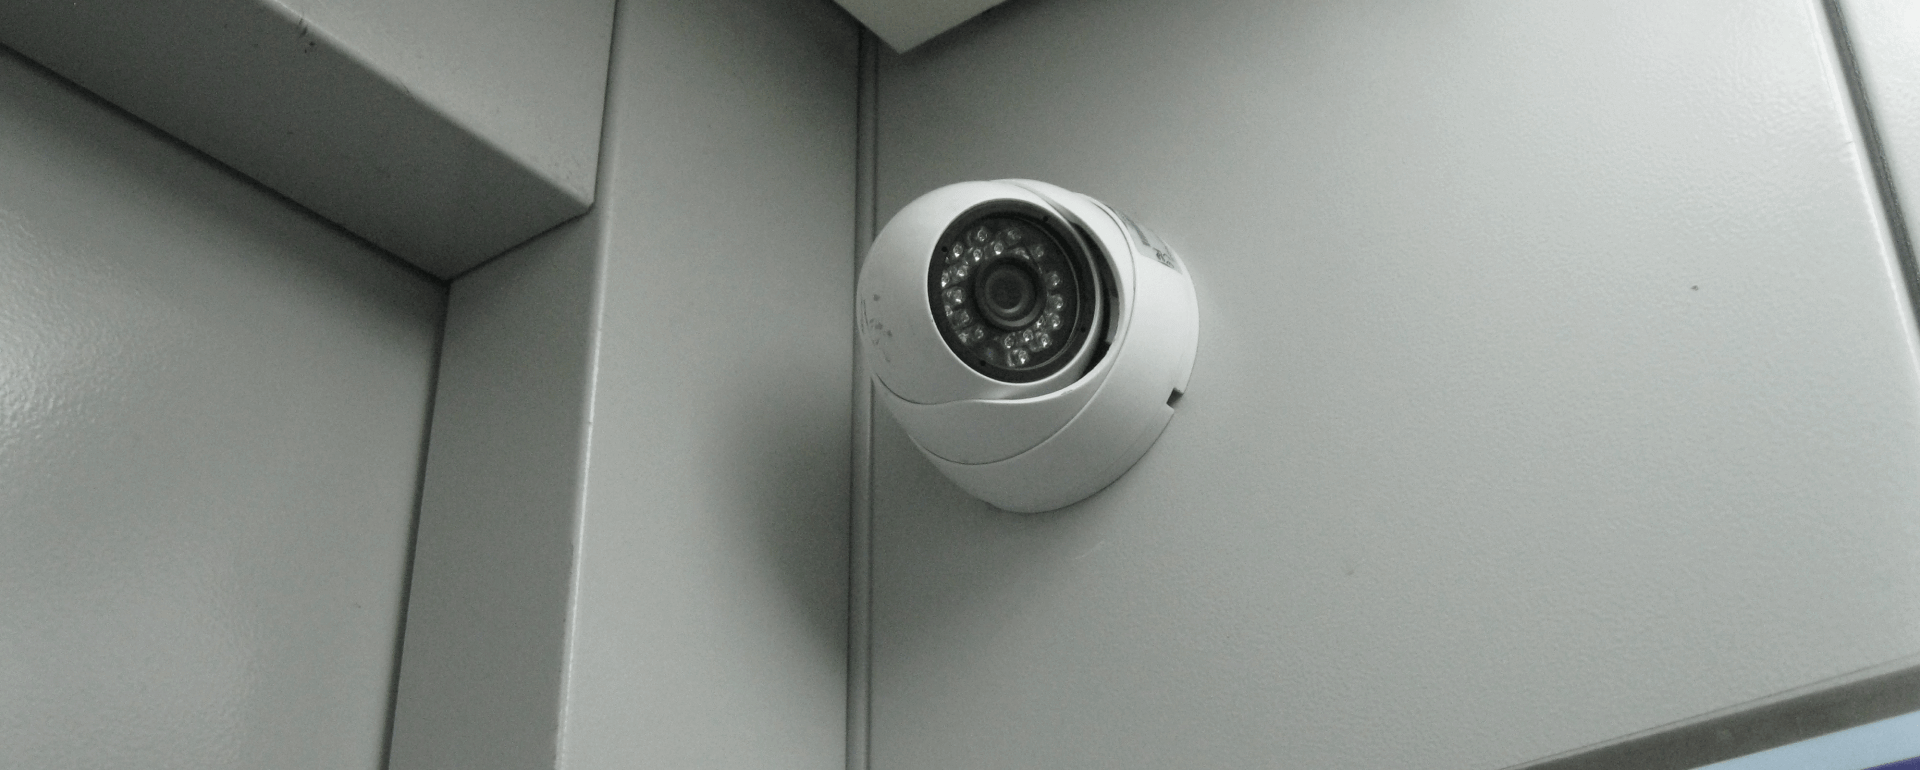 Диспетчеризация и видеонаблюдение в лифте